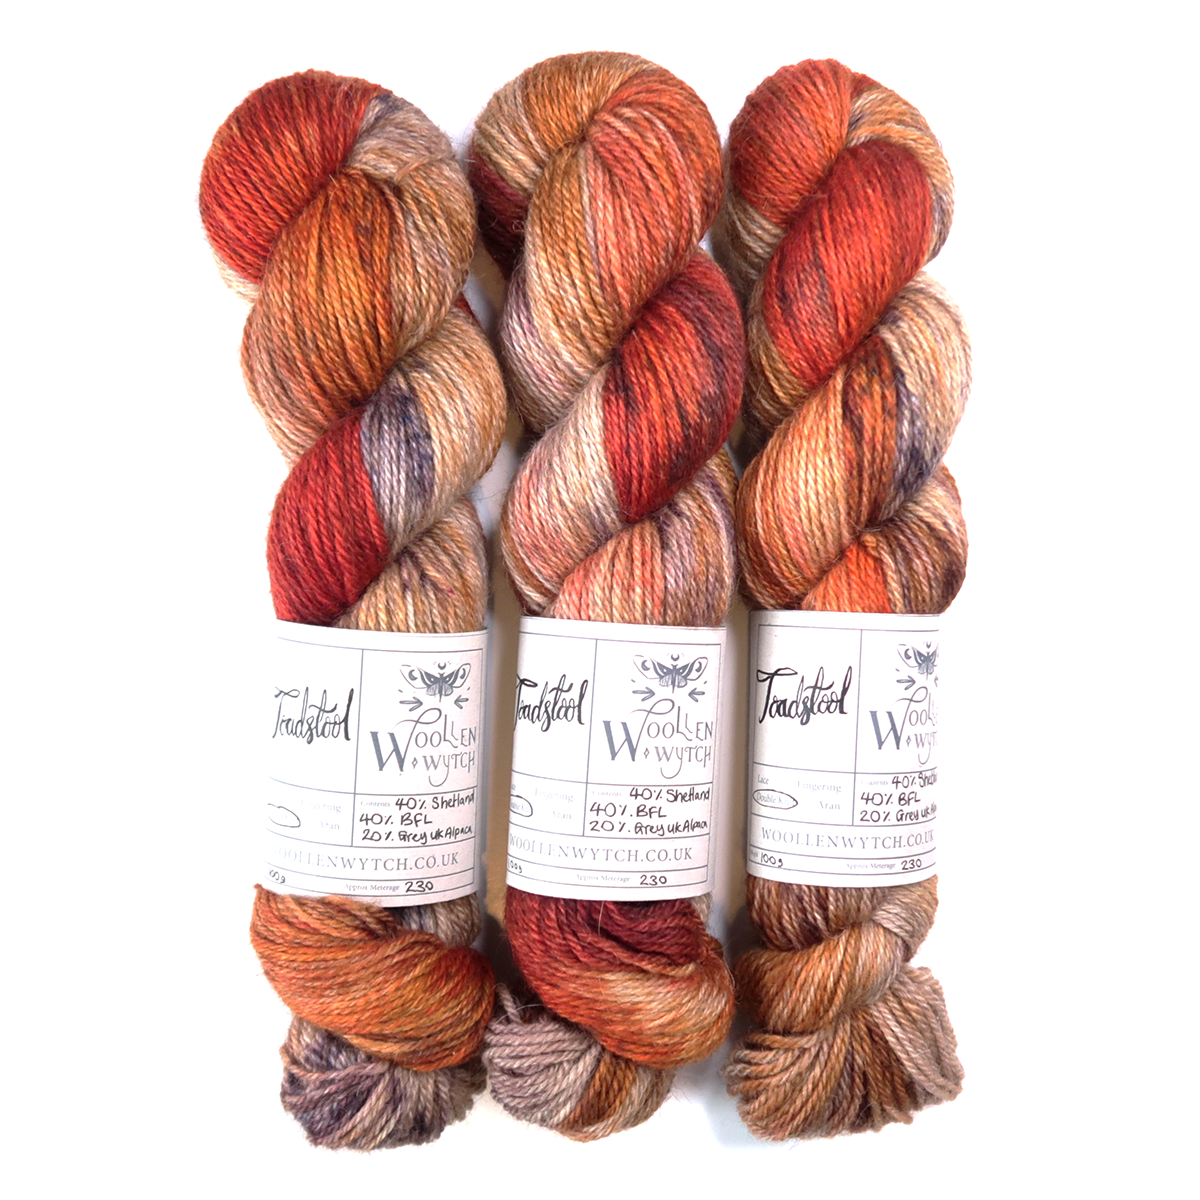 Shetland yarn hand dyed british wool toadstool woollen wytch